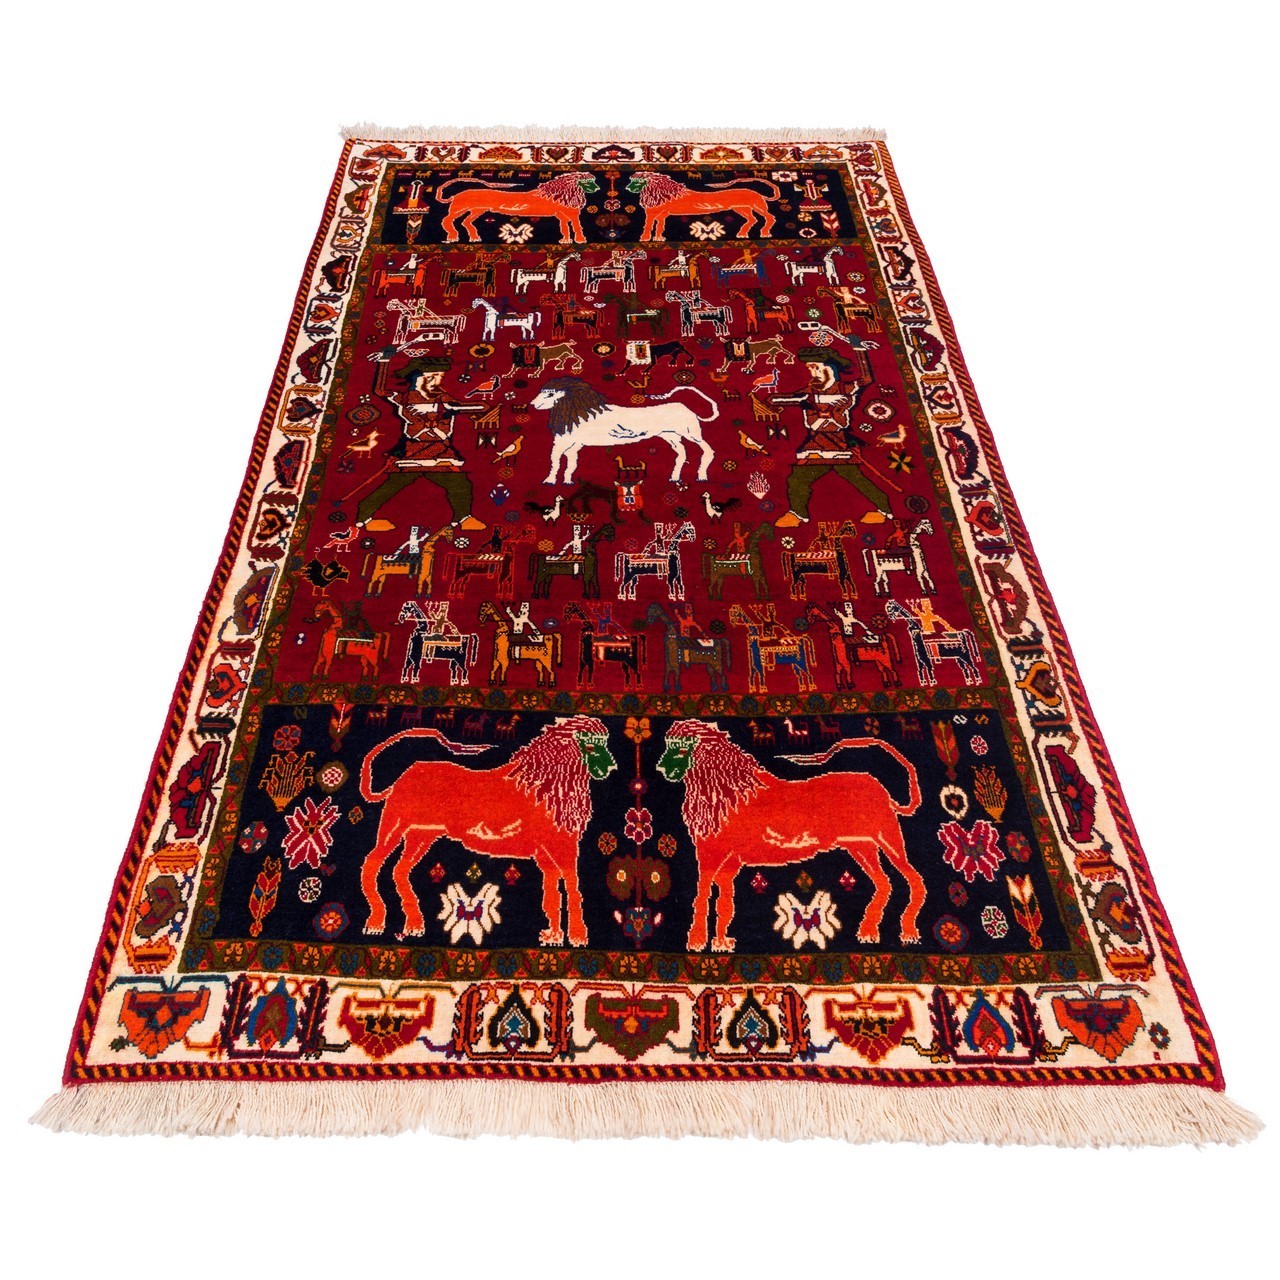 handgeknüpfter persischer Teppich. Ziffer 162014